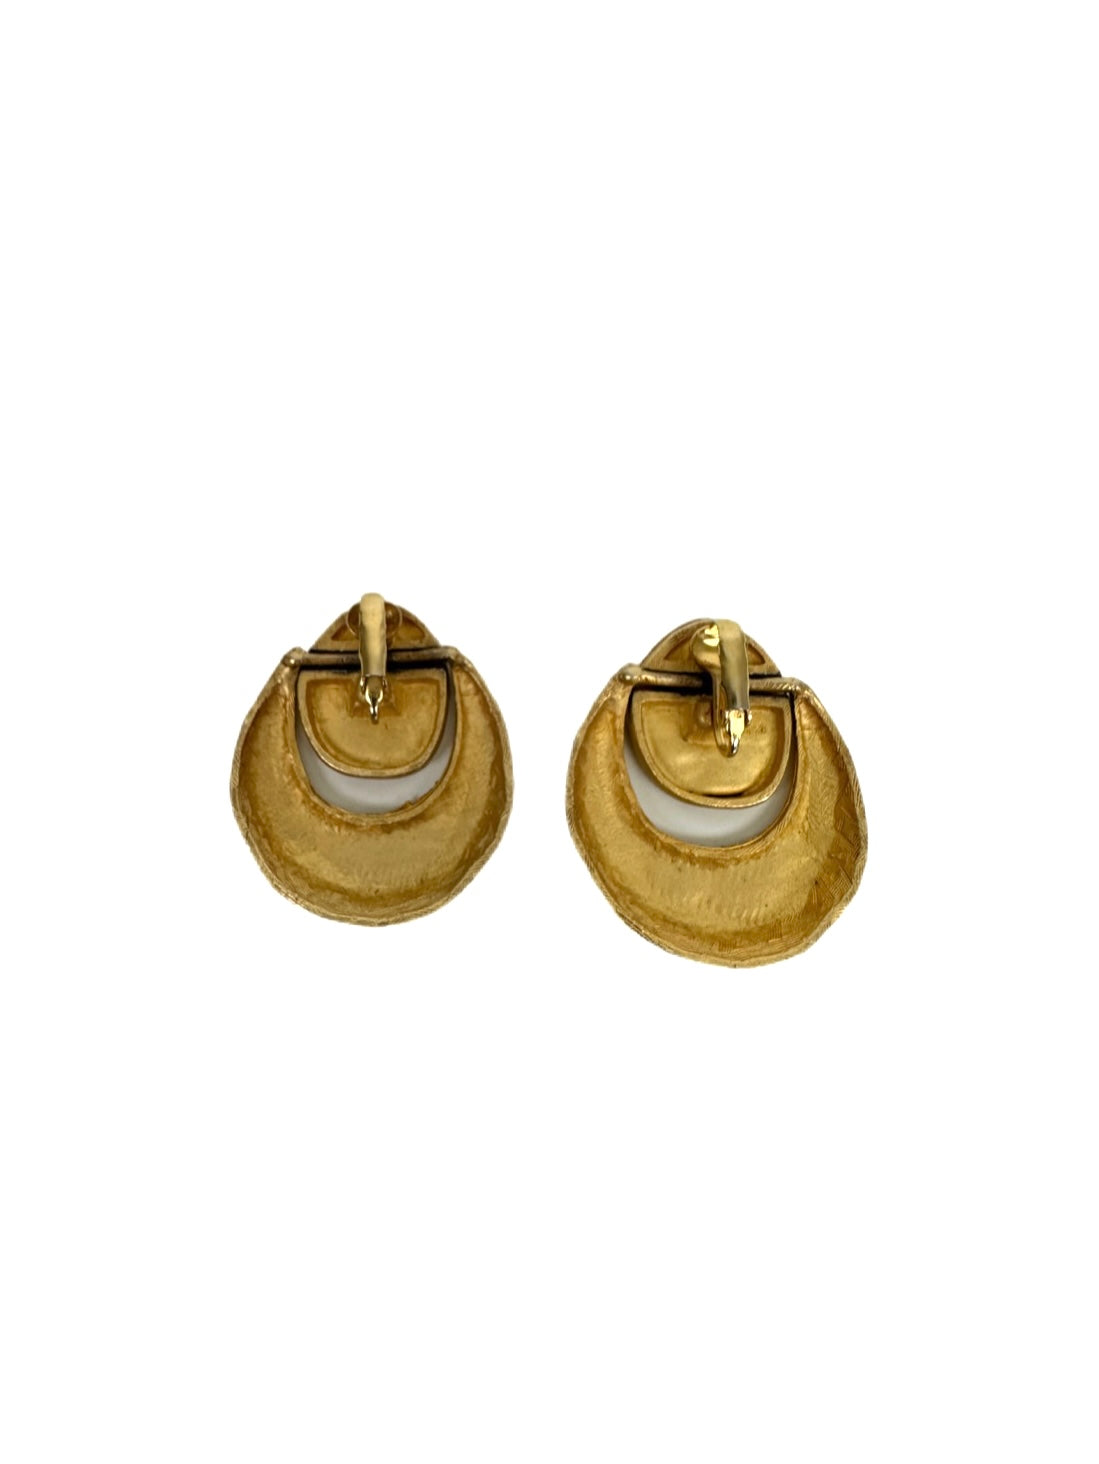 Black x Gold Earrings